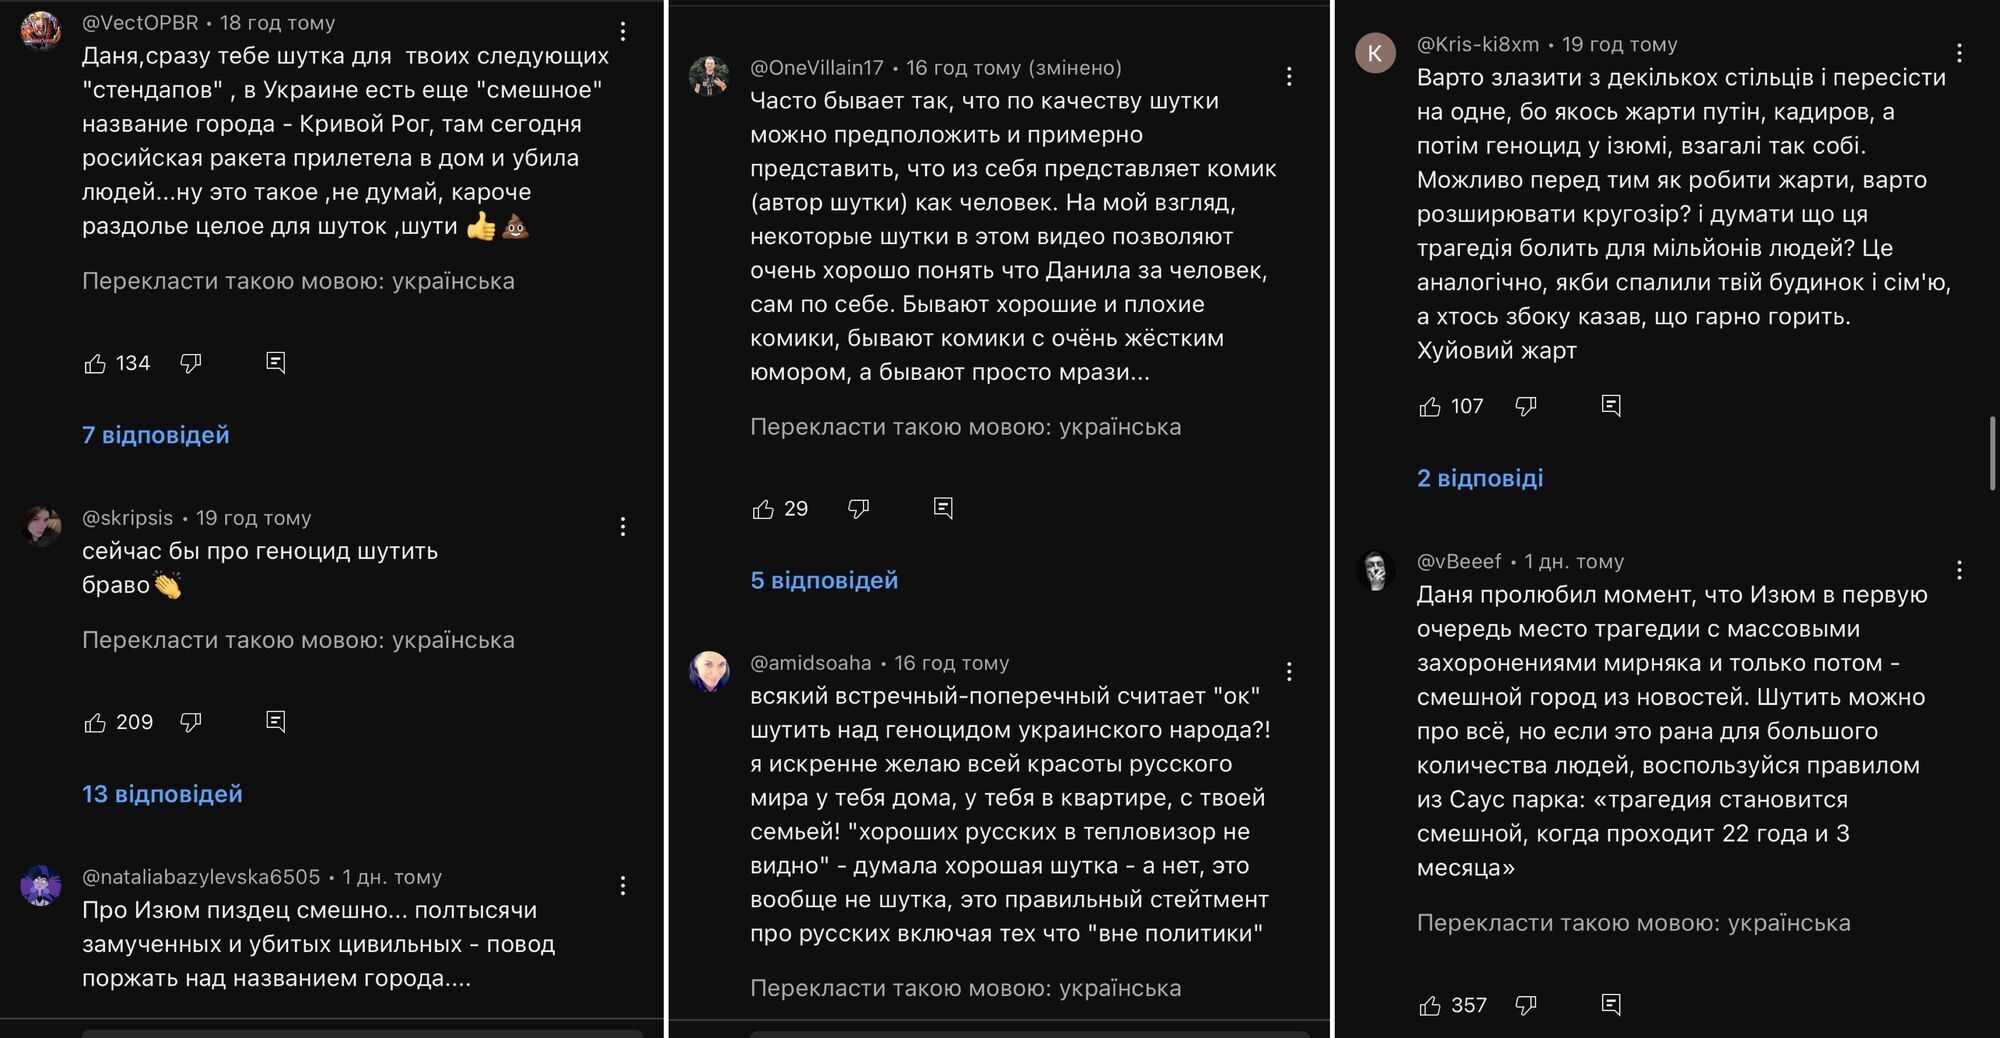 Российский комик Поперечный нелепо пошутил об Изюме, где оккупанты мучили украинцев, а затем попытался оправдаться